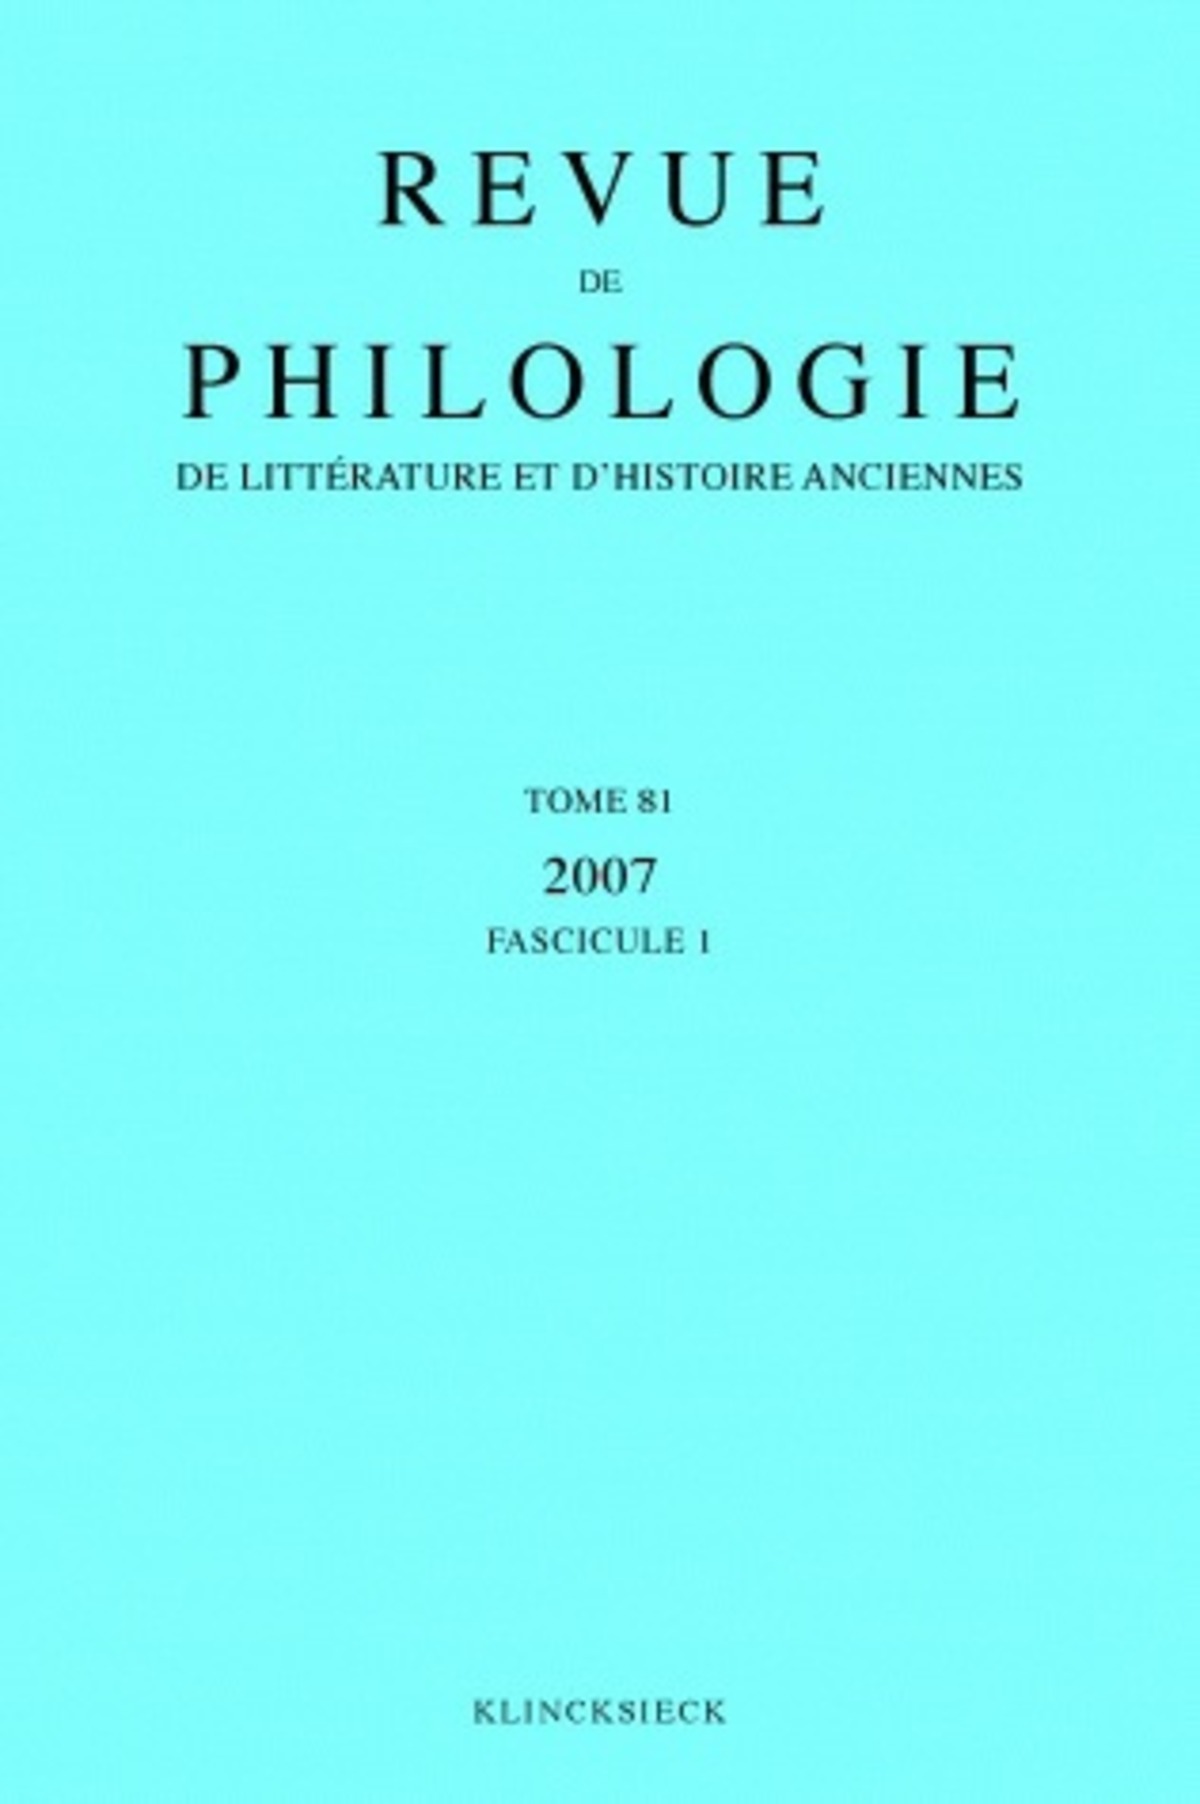 Revue de philologie, de littérature et d'histoire anciennes volume 81